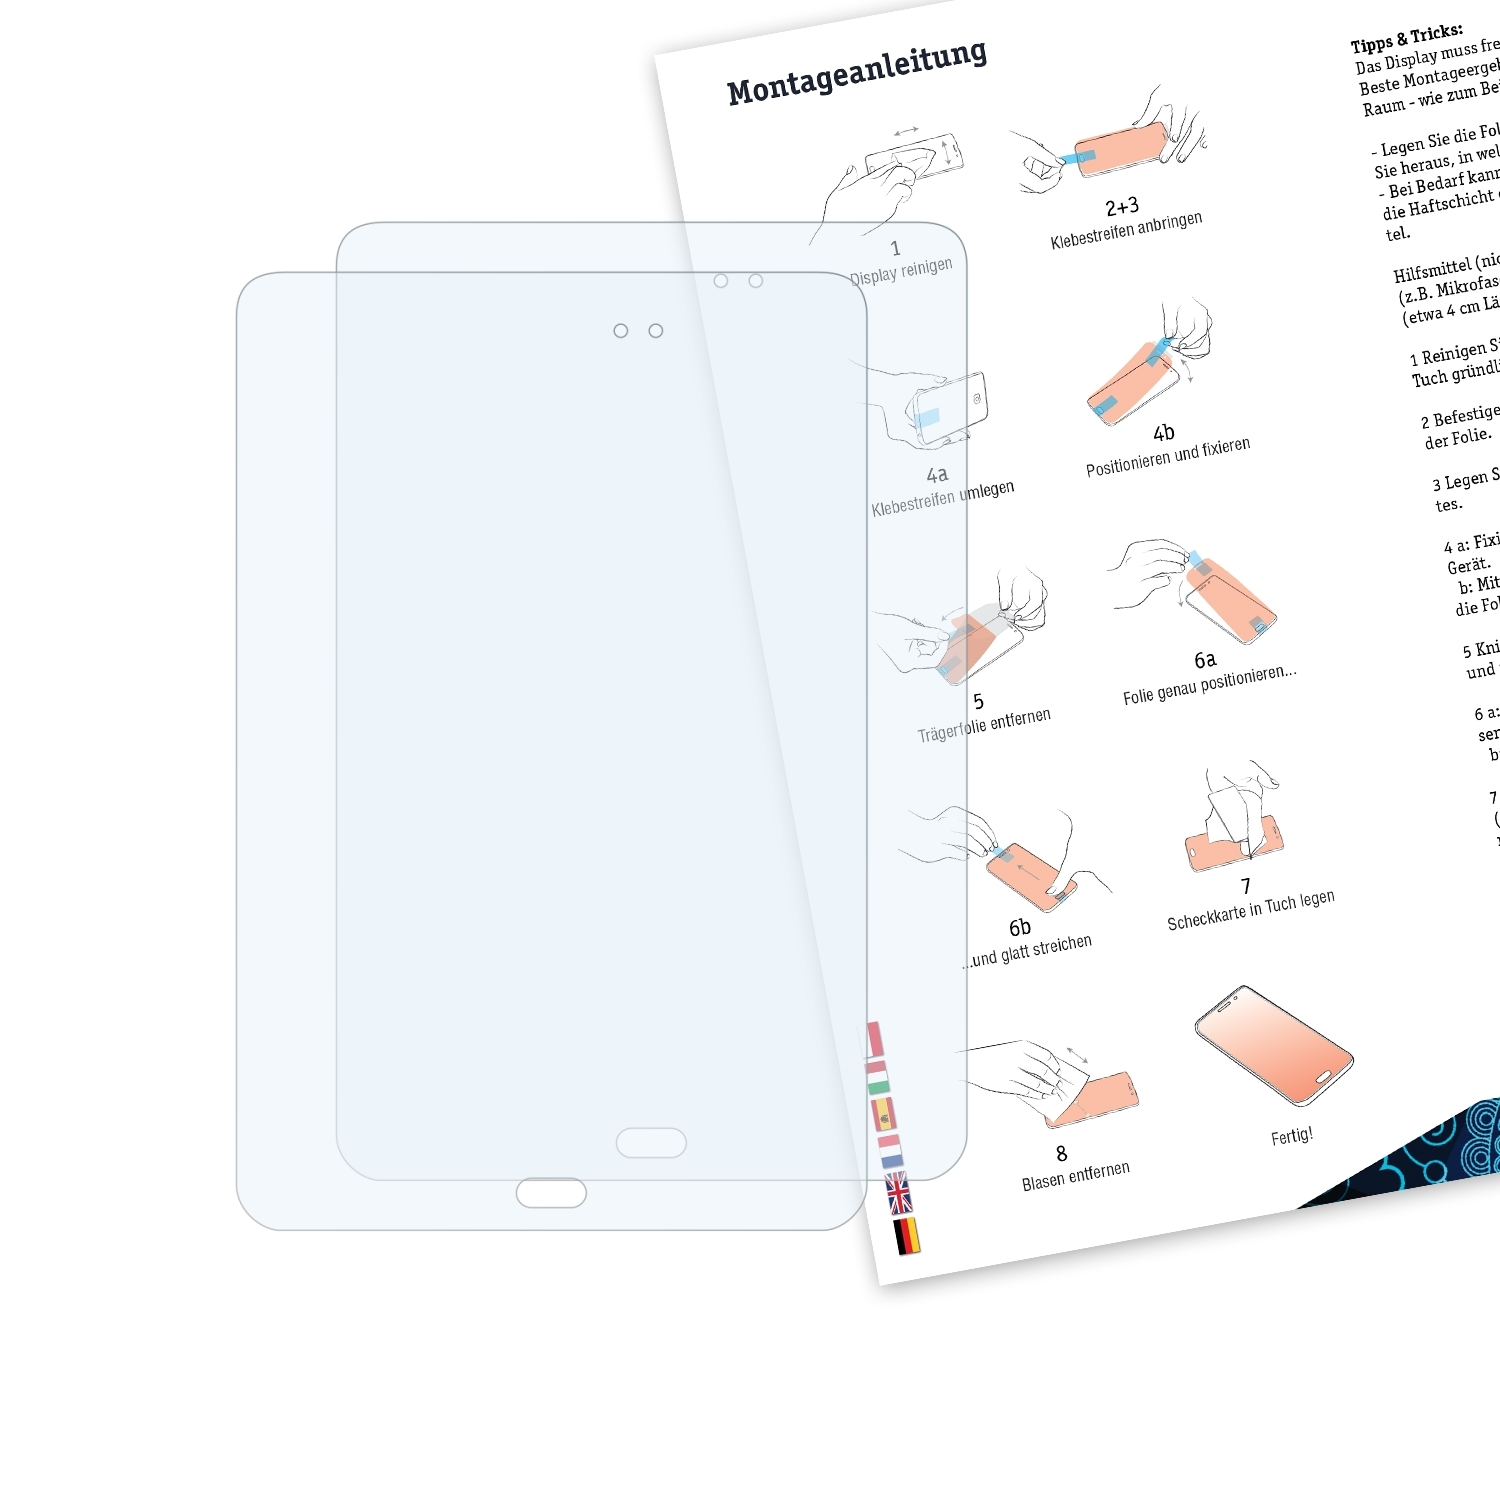 BRUNI 2x Basics-Clear 8.0) Schutzfolie(für A Tab Galaxy Samsung